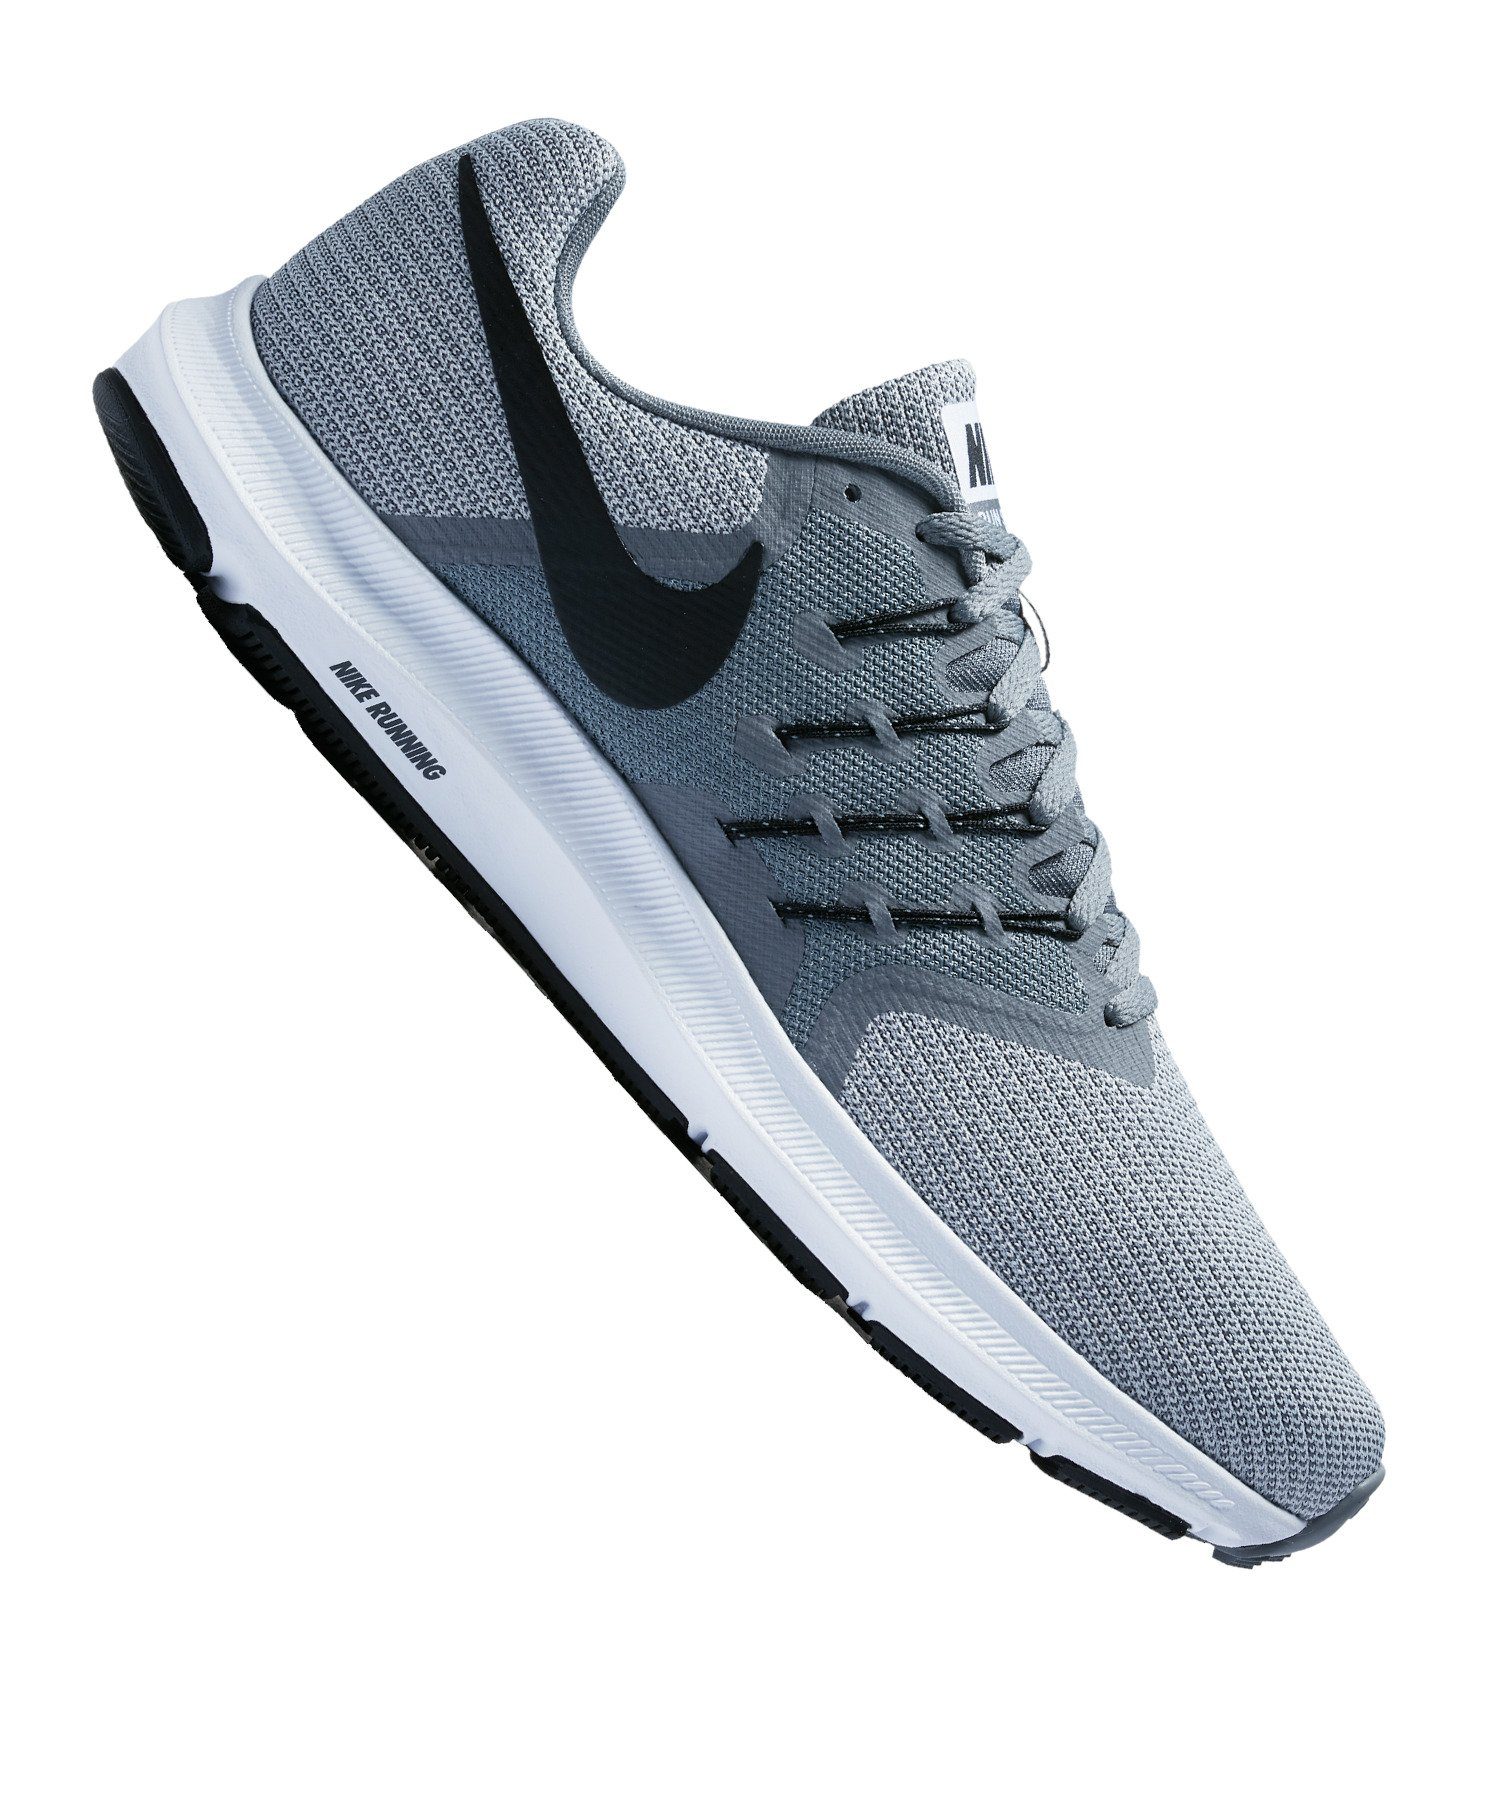 Nike »Downshifter 8 Running« Laufschuh online kaufen | OTTO